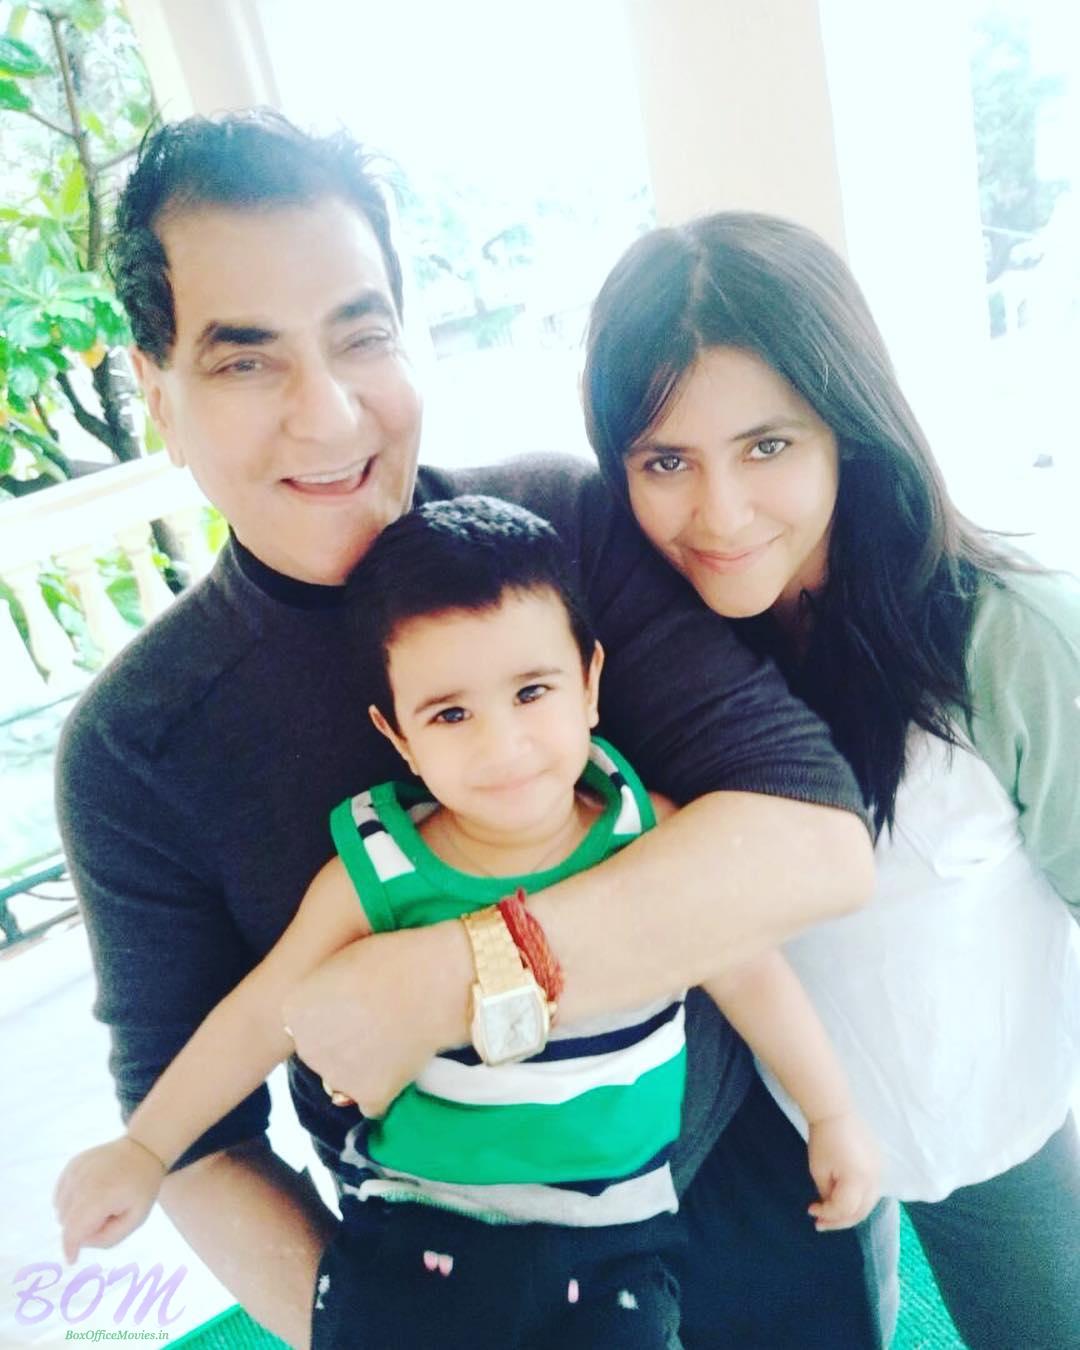 Actor Jitendra with his grandson and daughter Ekta Kapoor